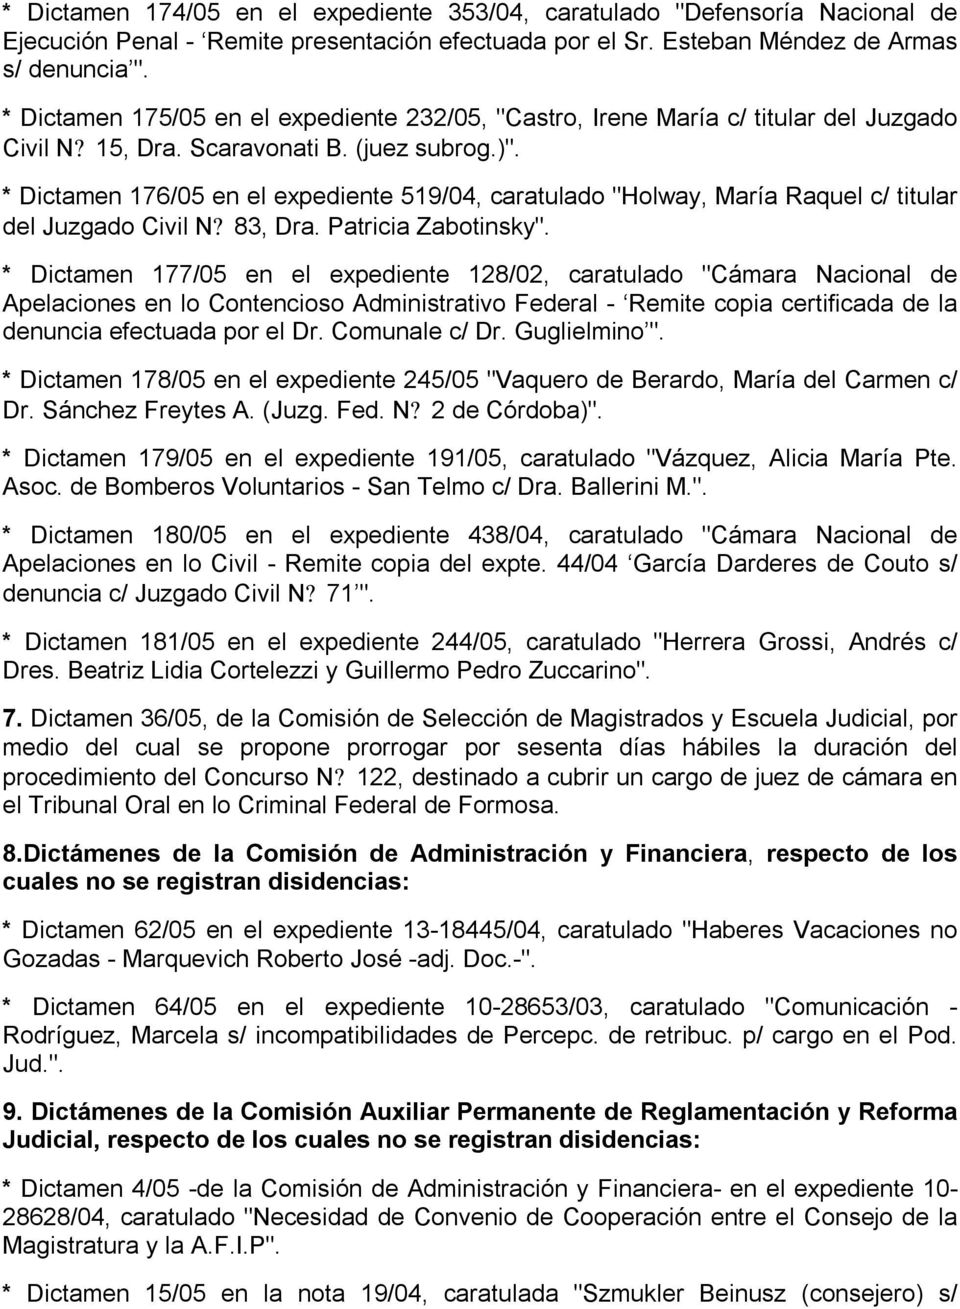 * Dictamen 176/05 en el expediente 519/04, caratulado "Holway, María Raquel c/ titular del Juzgado Civil N? 83, Dra. Patricia Zabotinsky".